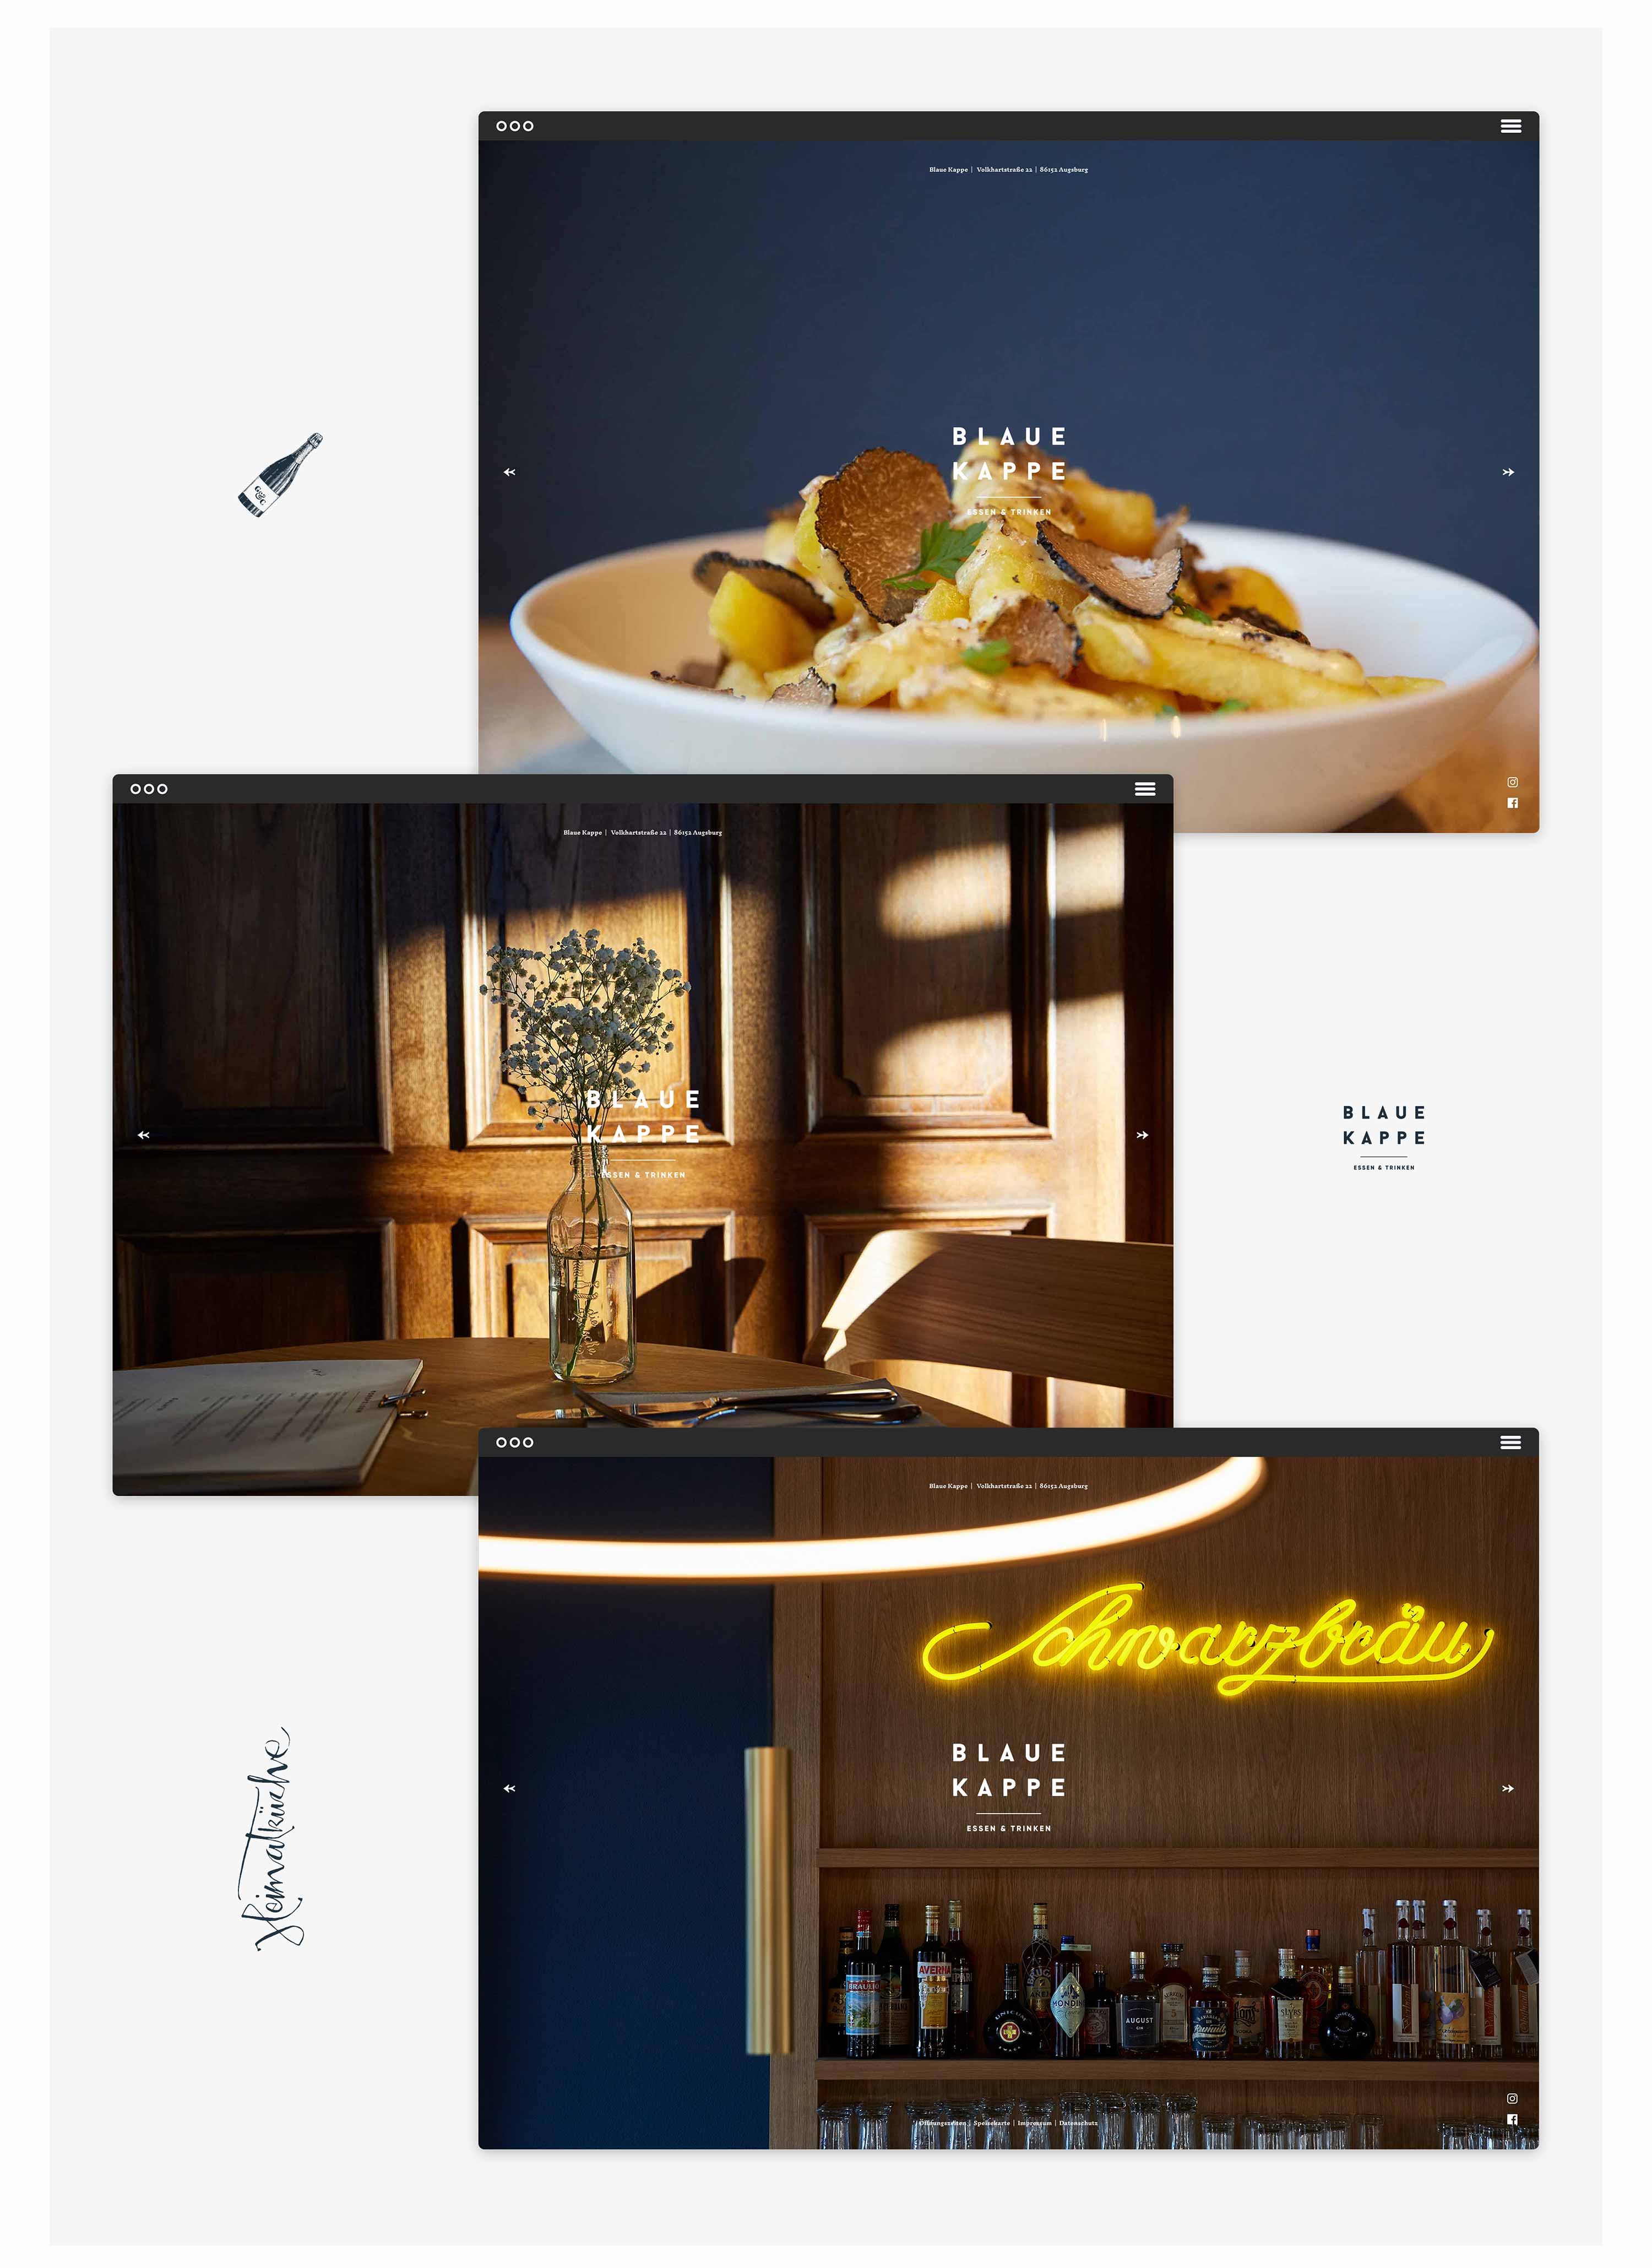 03-blaue-kappe-restaurant-augsburg-essen-trinken-corporate-design-branding-website-logo